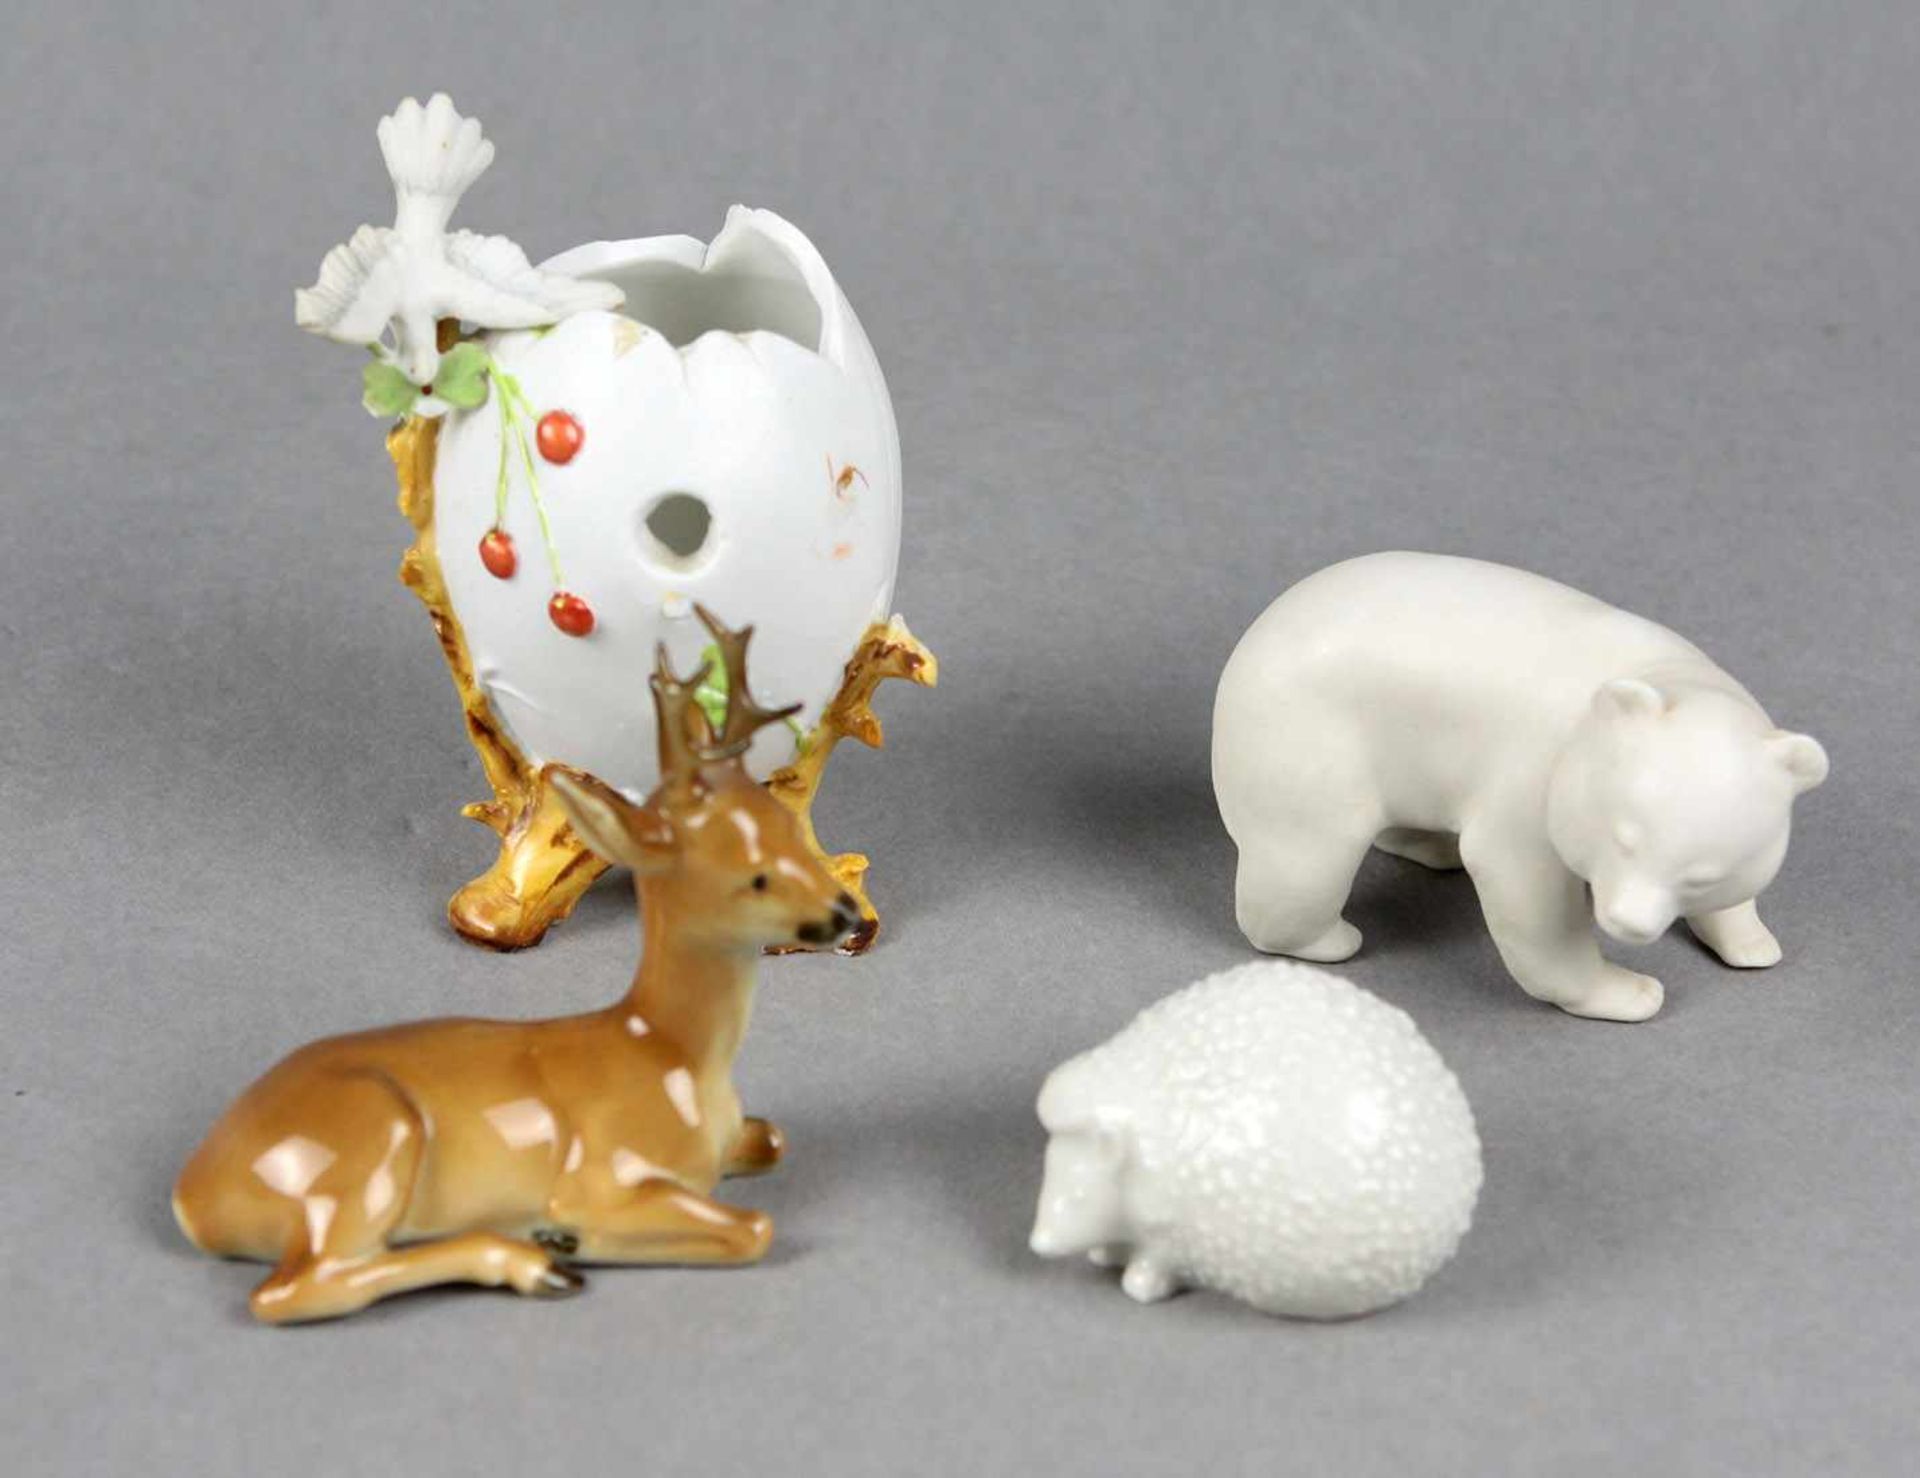 4 Porzellan Miniaturen Porzellan überwiegend mit Manufakturmarke Hutschenreuther, dabei liegender